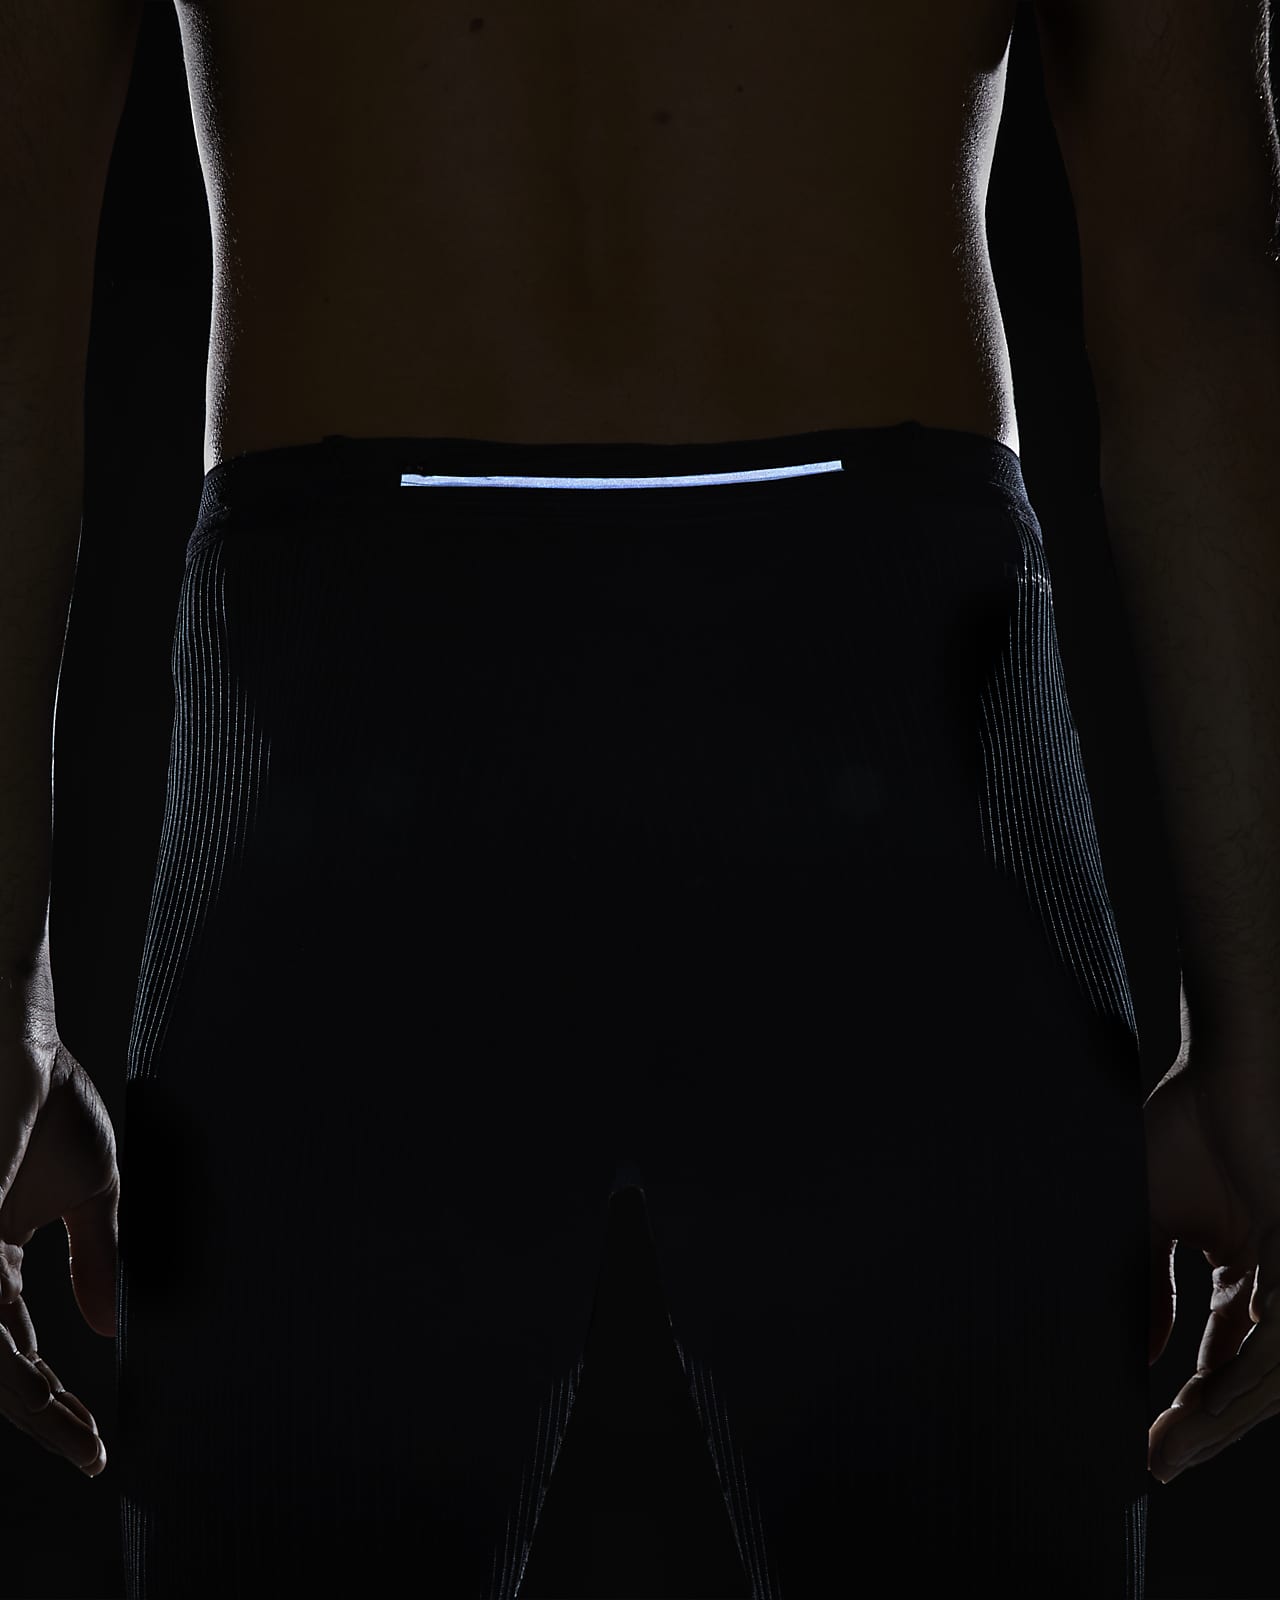 Nike Mens Dri-FIT ADV AeroSwift Running Tights Black DM4613-011 Size 2XLT  NWT